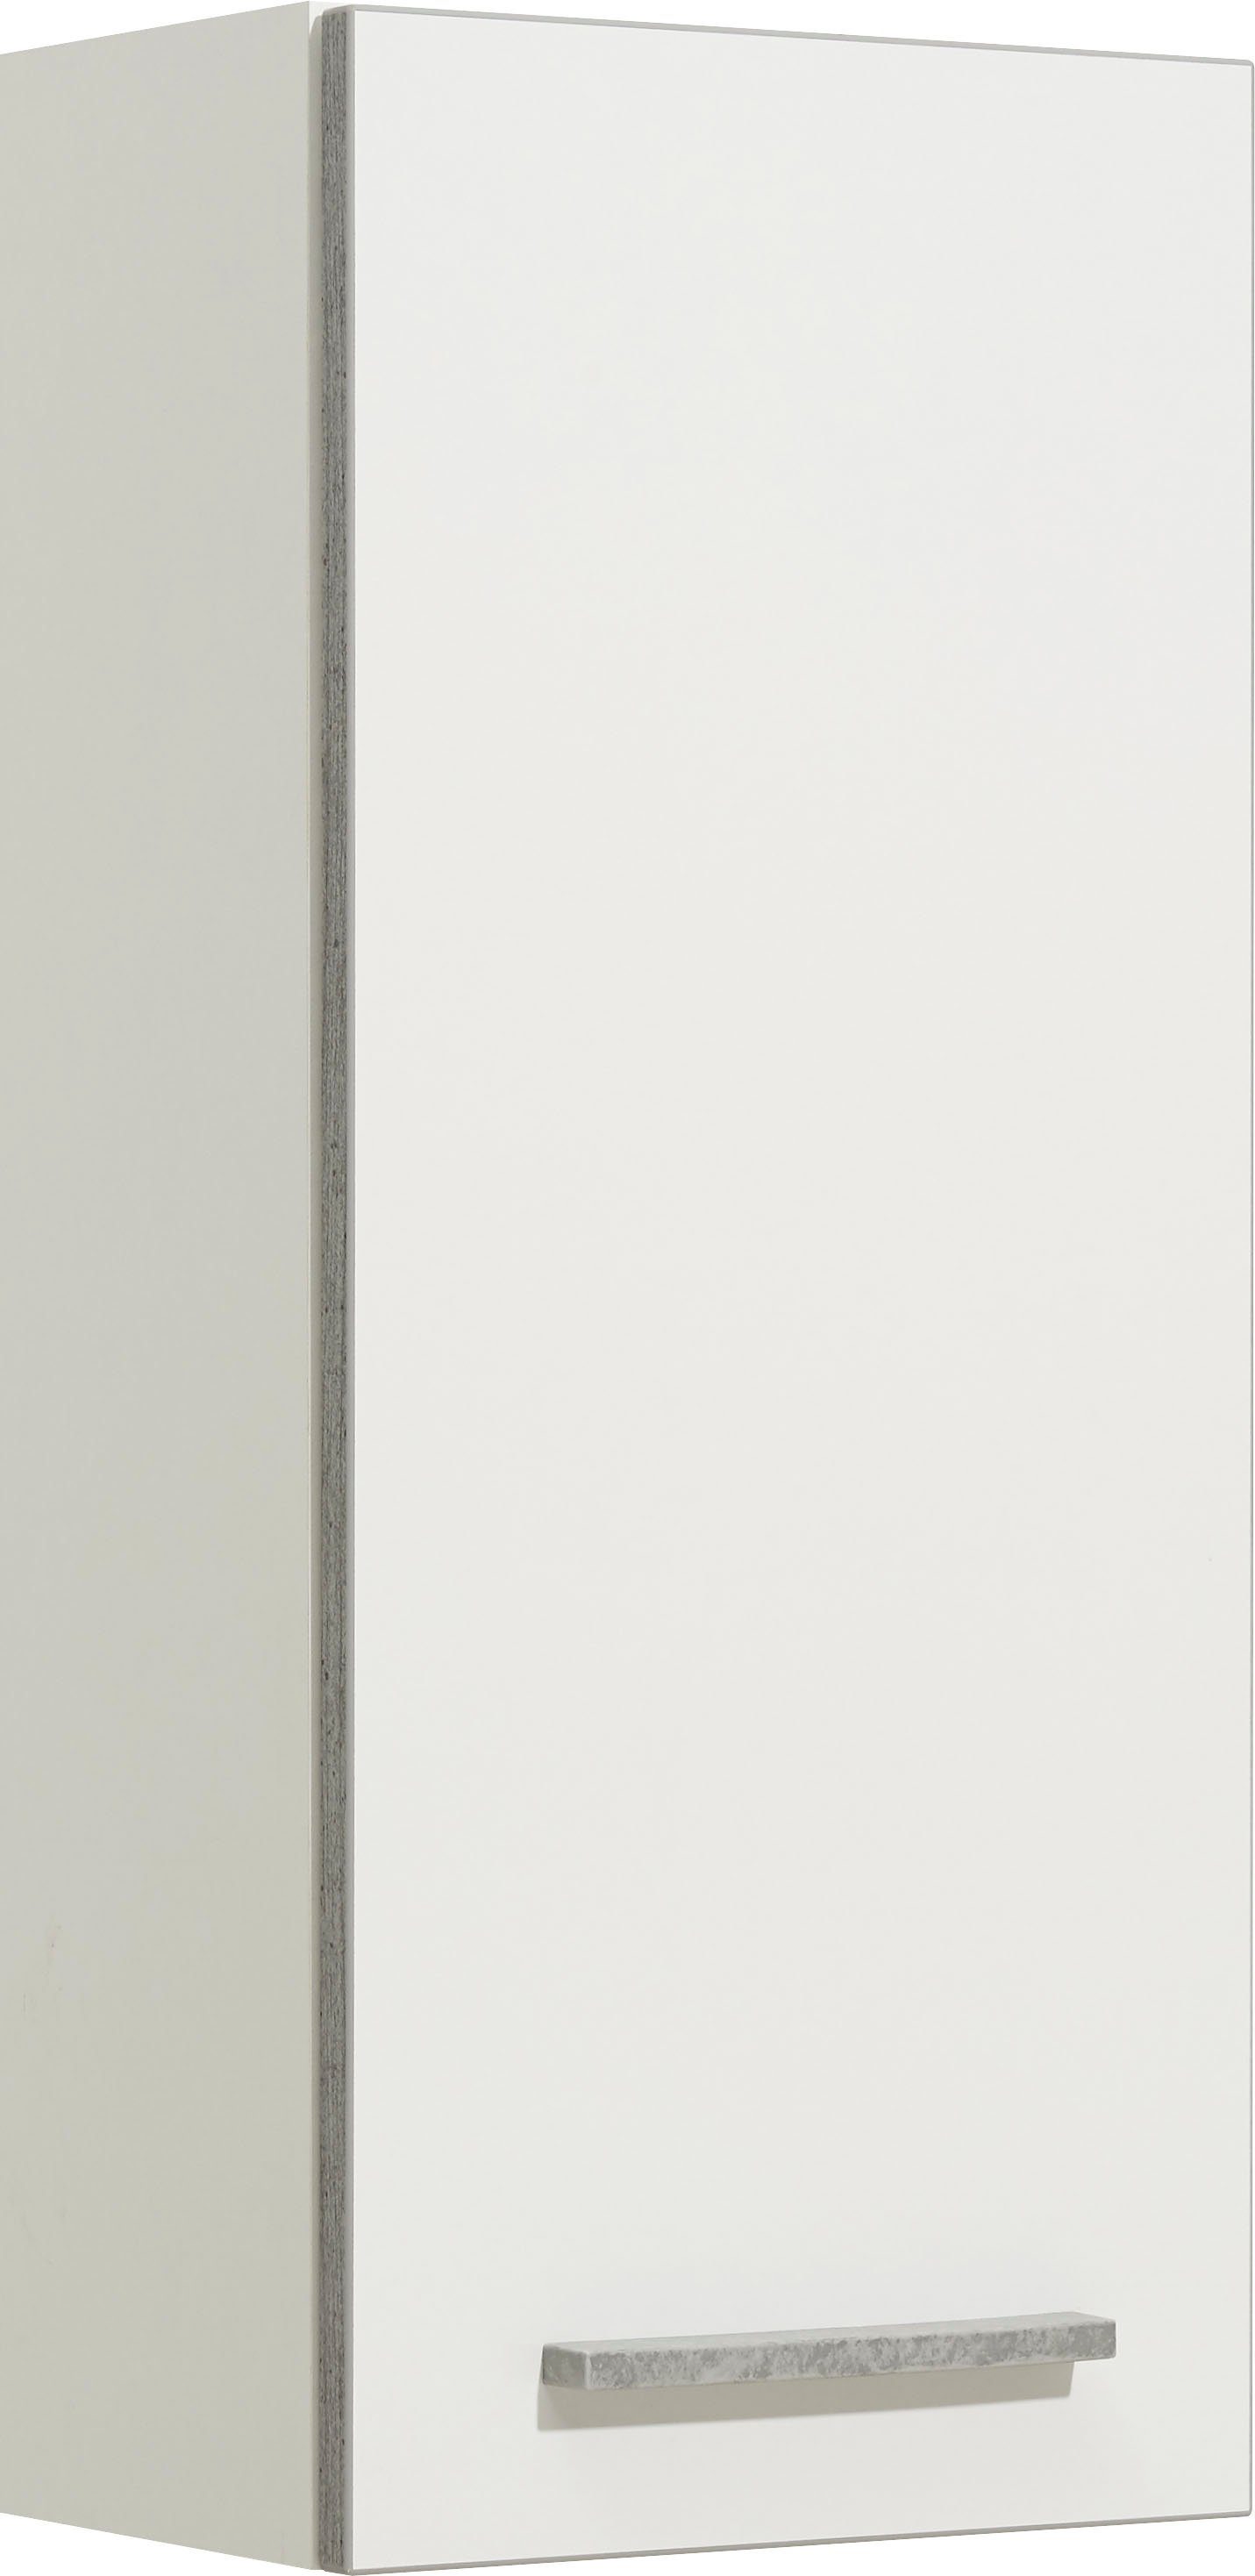 PELIPAL Hangend kastje Quickset 953 Breedte 30 cm, 2 losse planken, garnering in beton-look